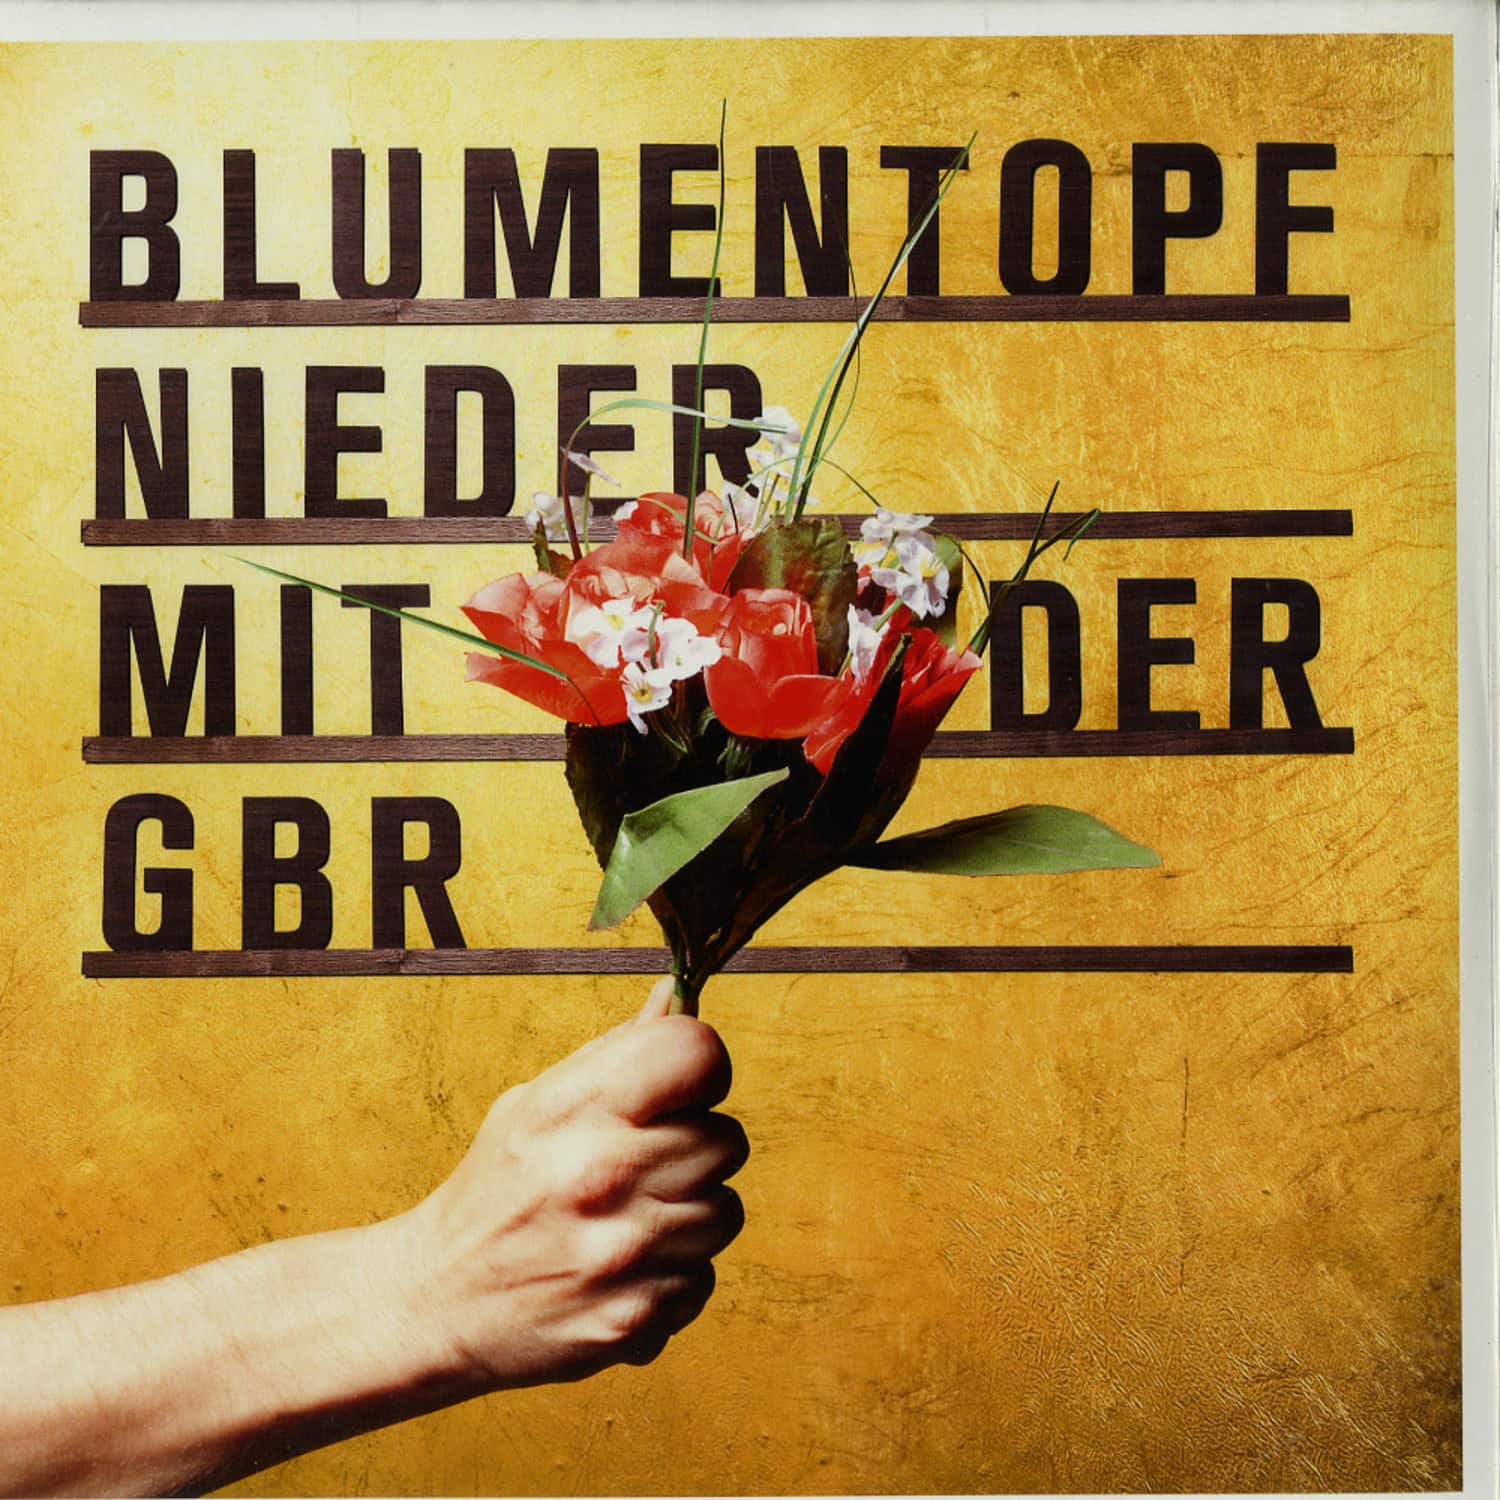 Blumentopf - NIEDER MIT DER GBR 